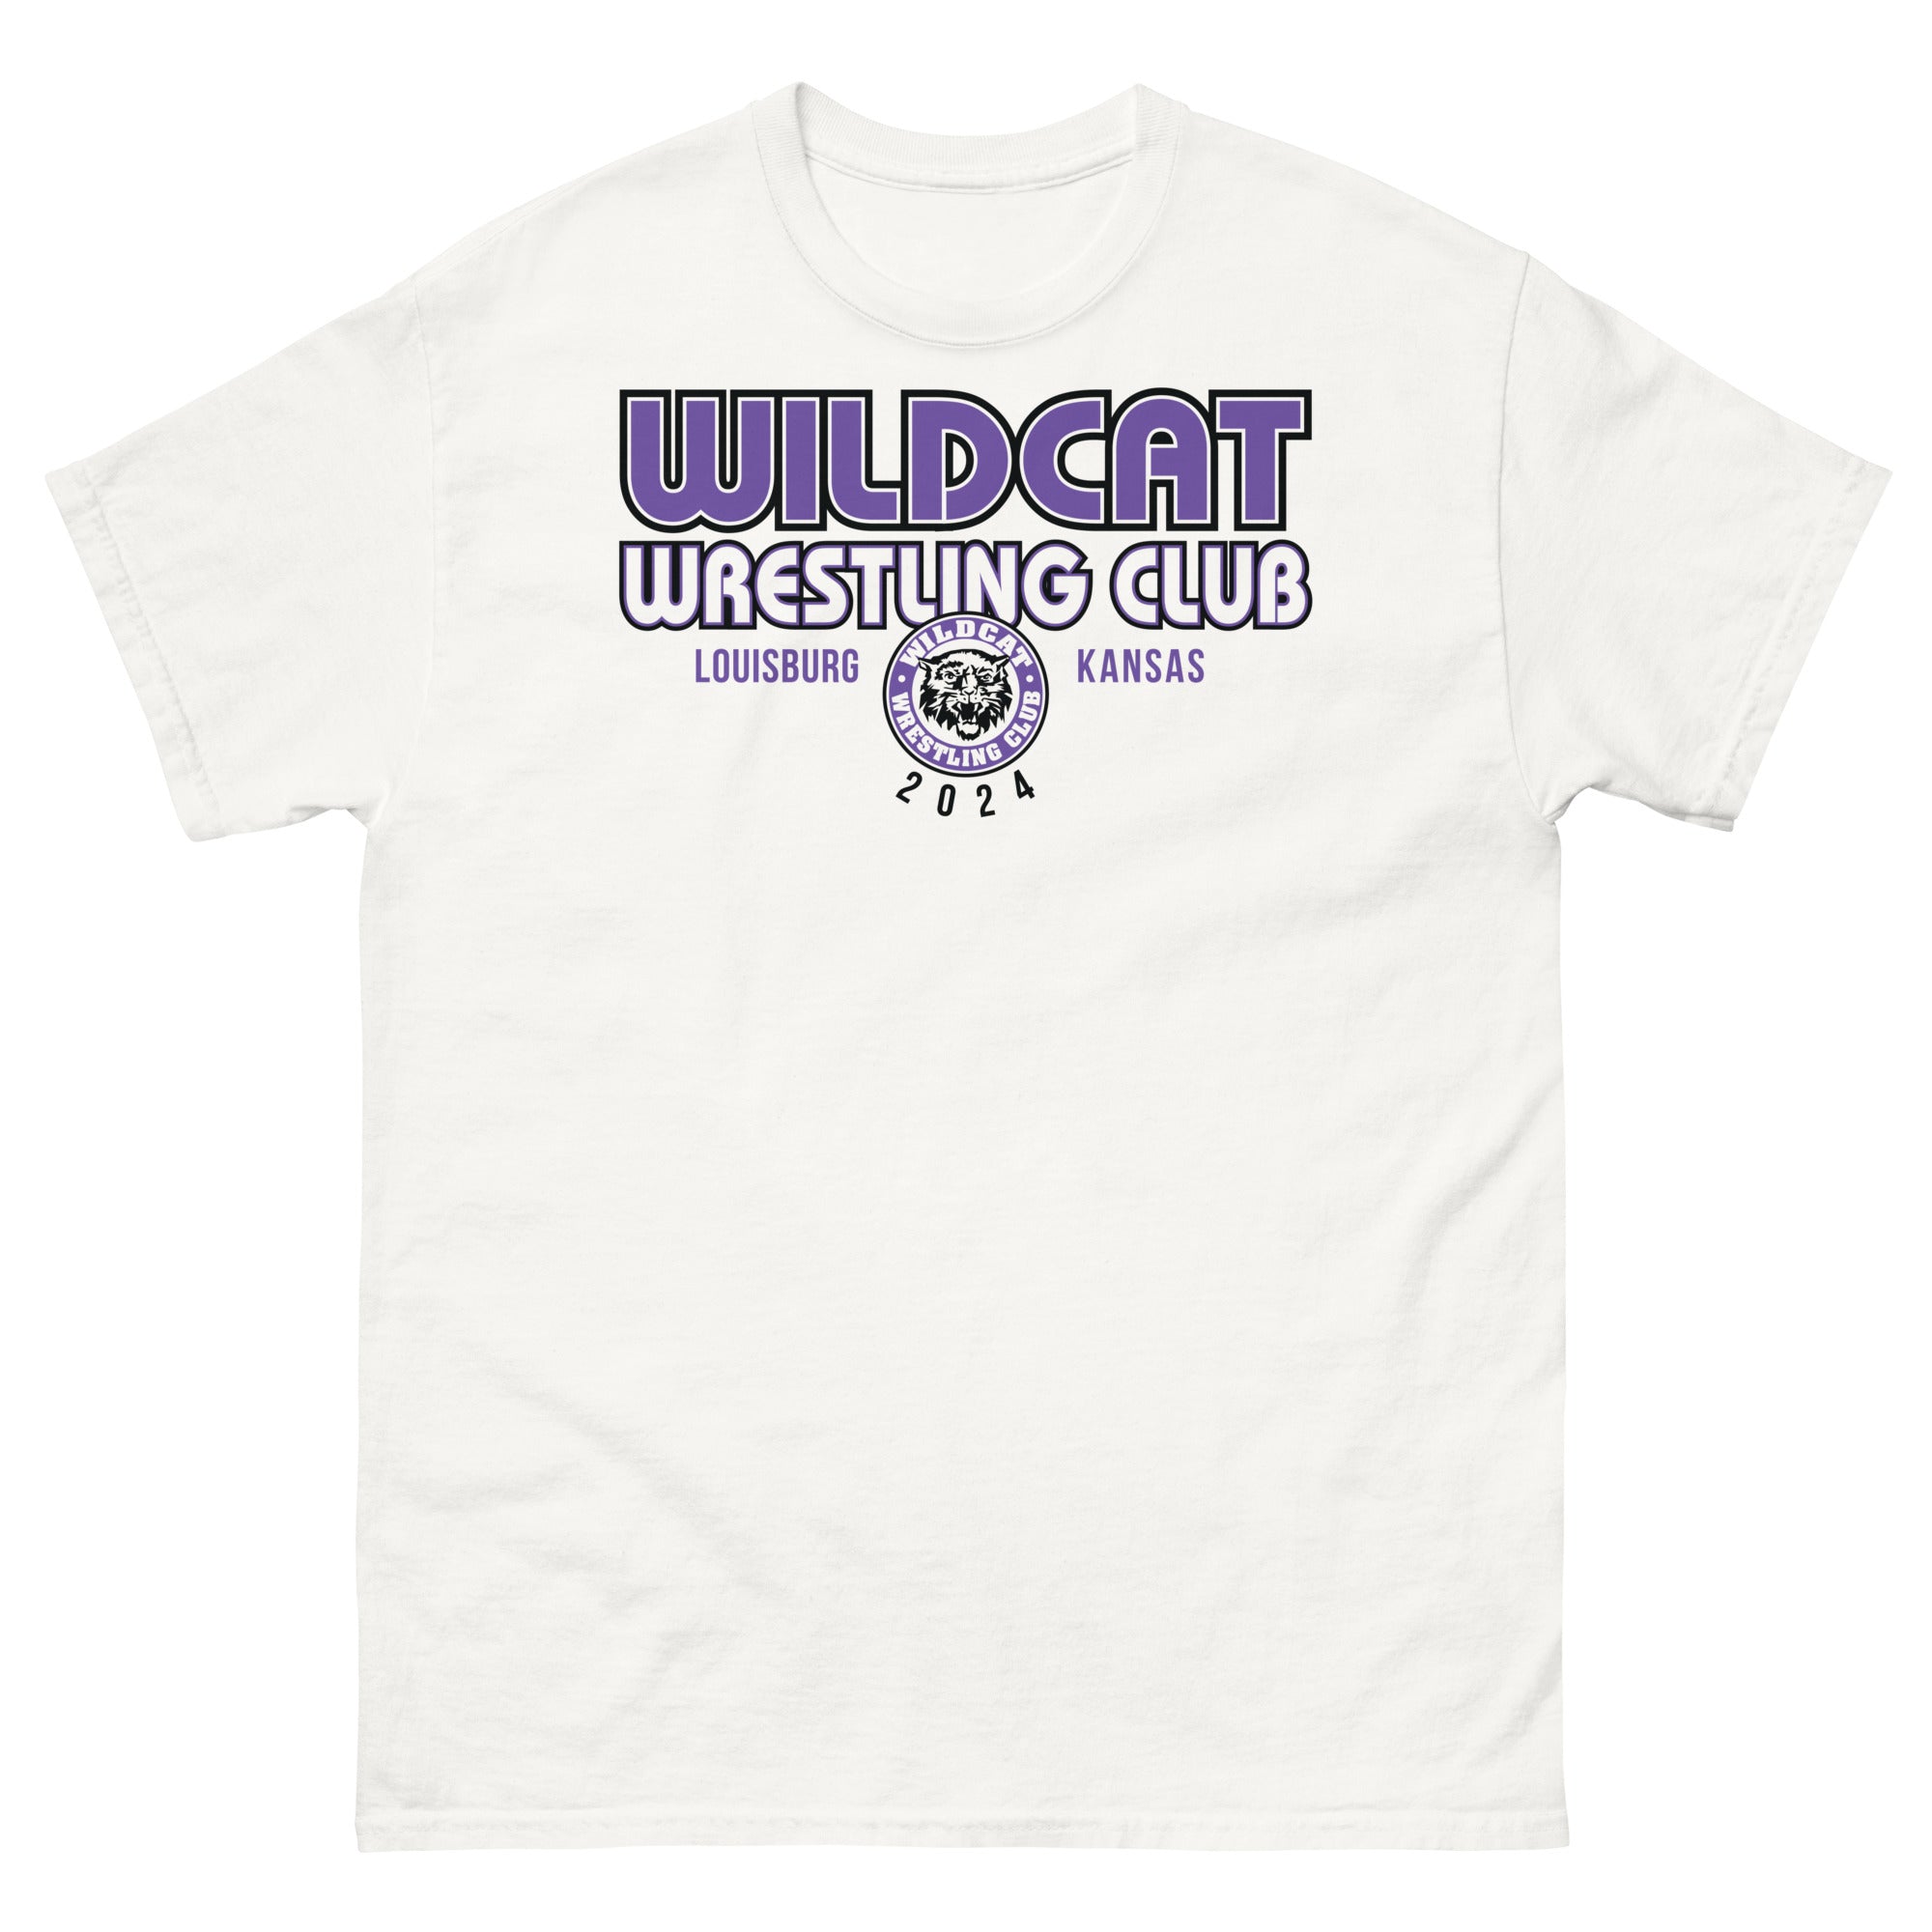 Wildcat Wrestling Club (Louisburg) - Front Design Only - Men's classic tee